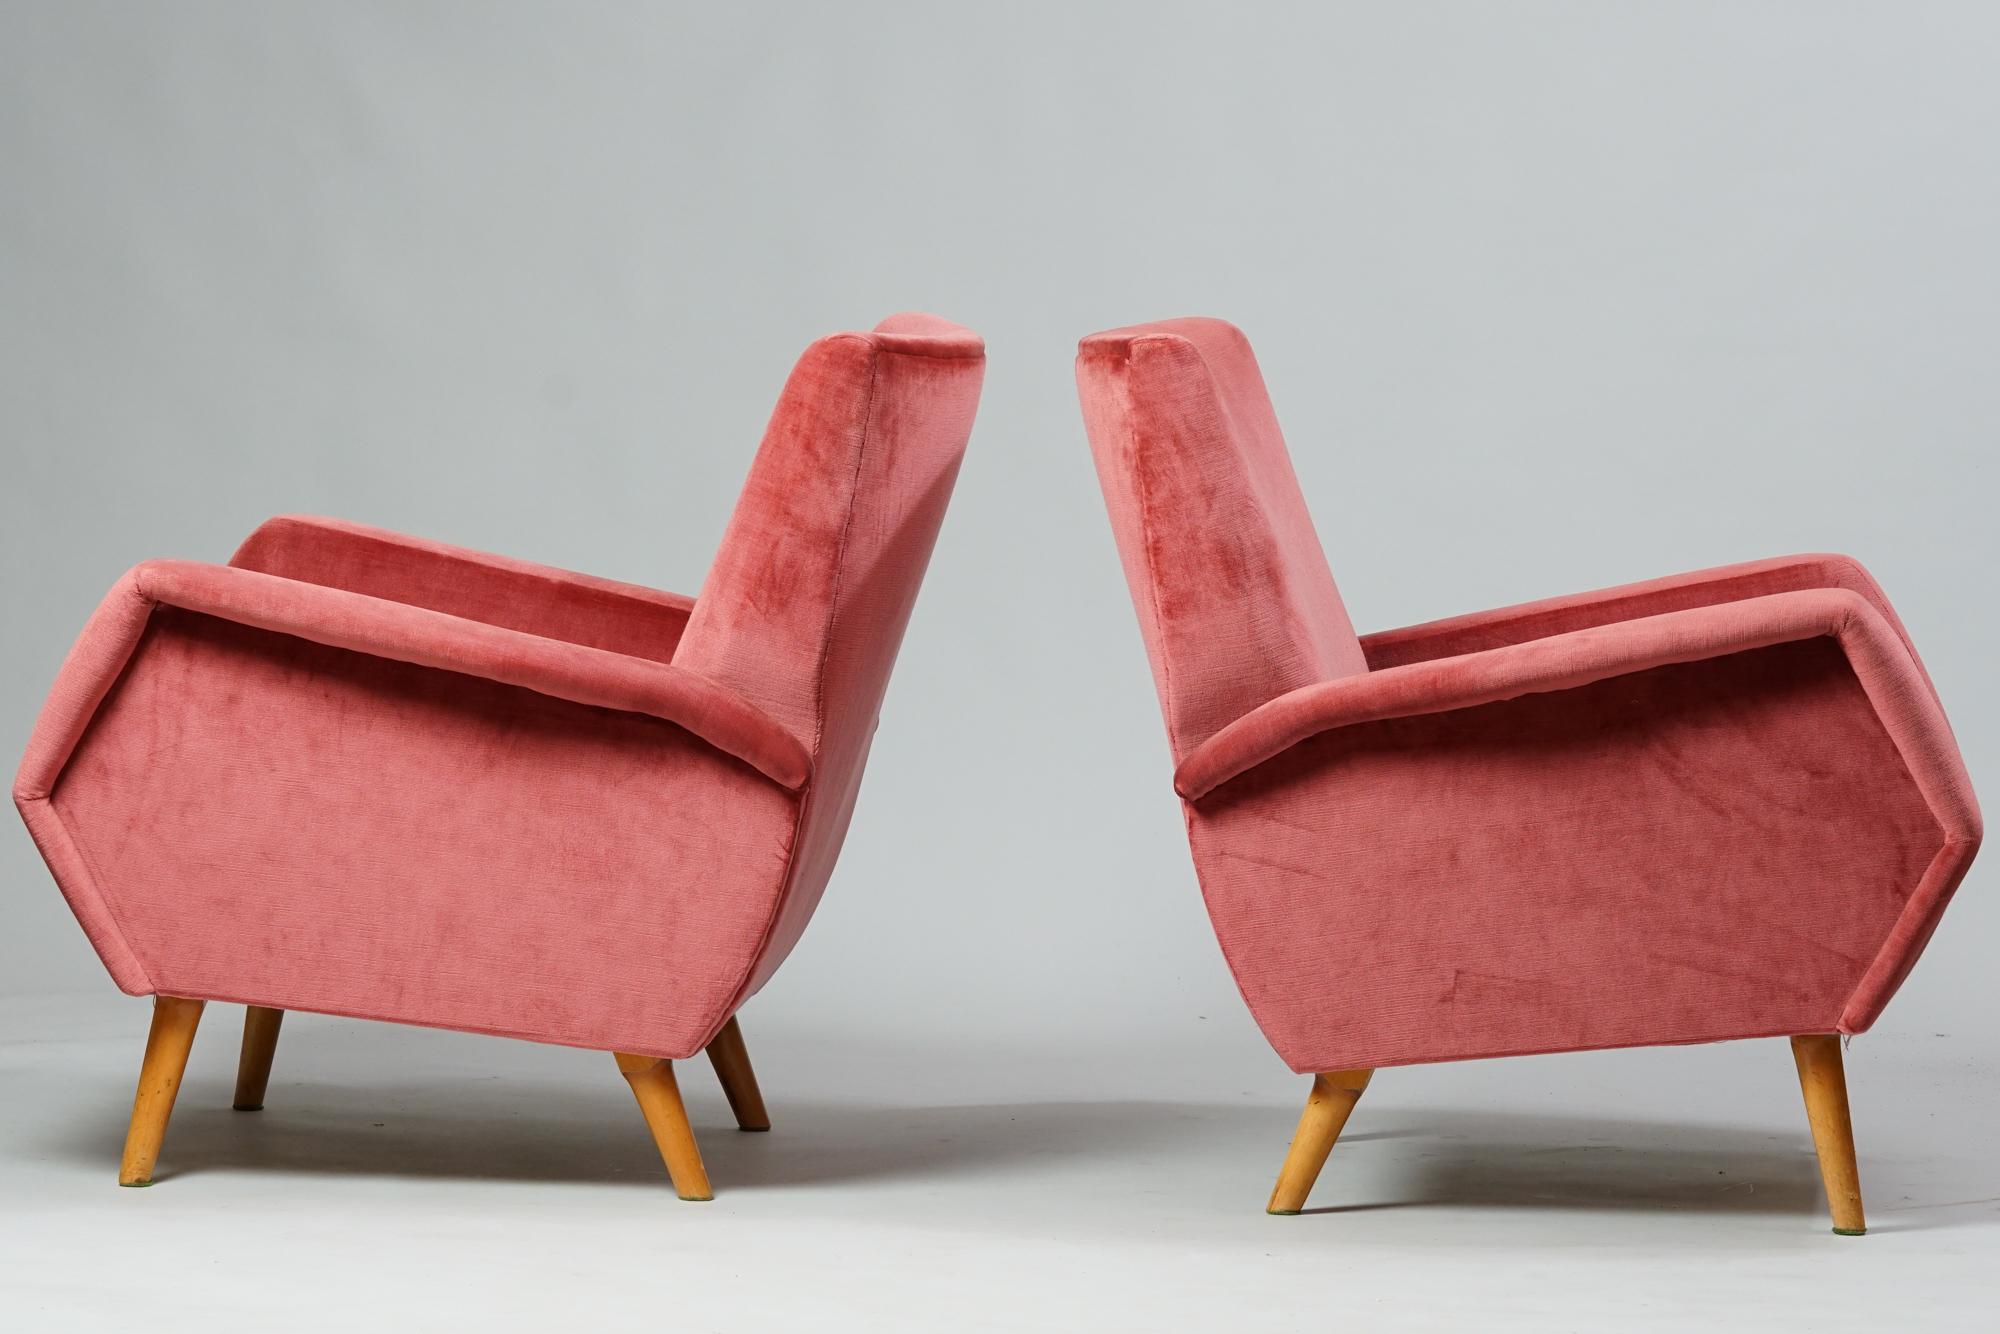 Ein Paar Sessel Modell 803 von Gio Ponti für Cassina, 1950er Jahre. Eiche und Stoffpolsterung. Guter Vintage-Zustand, leichte Patina im Einklang mit Alter und Gebrauch. Die Sessel werden als Set verkauft. Die Sessel des Modells 803 wurden